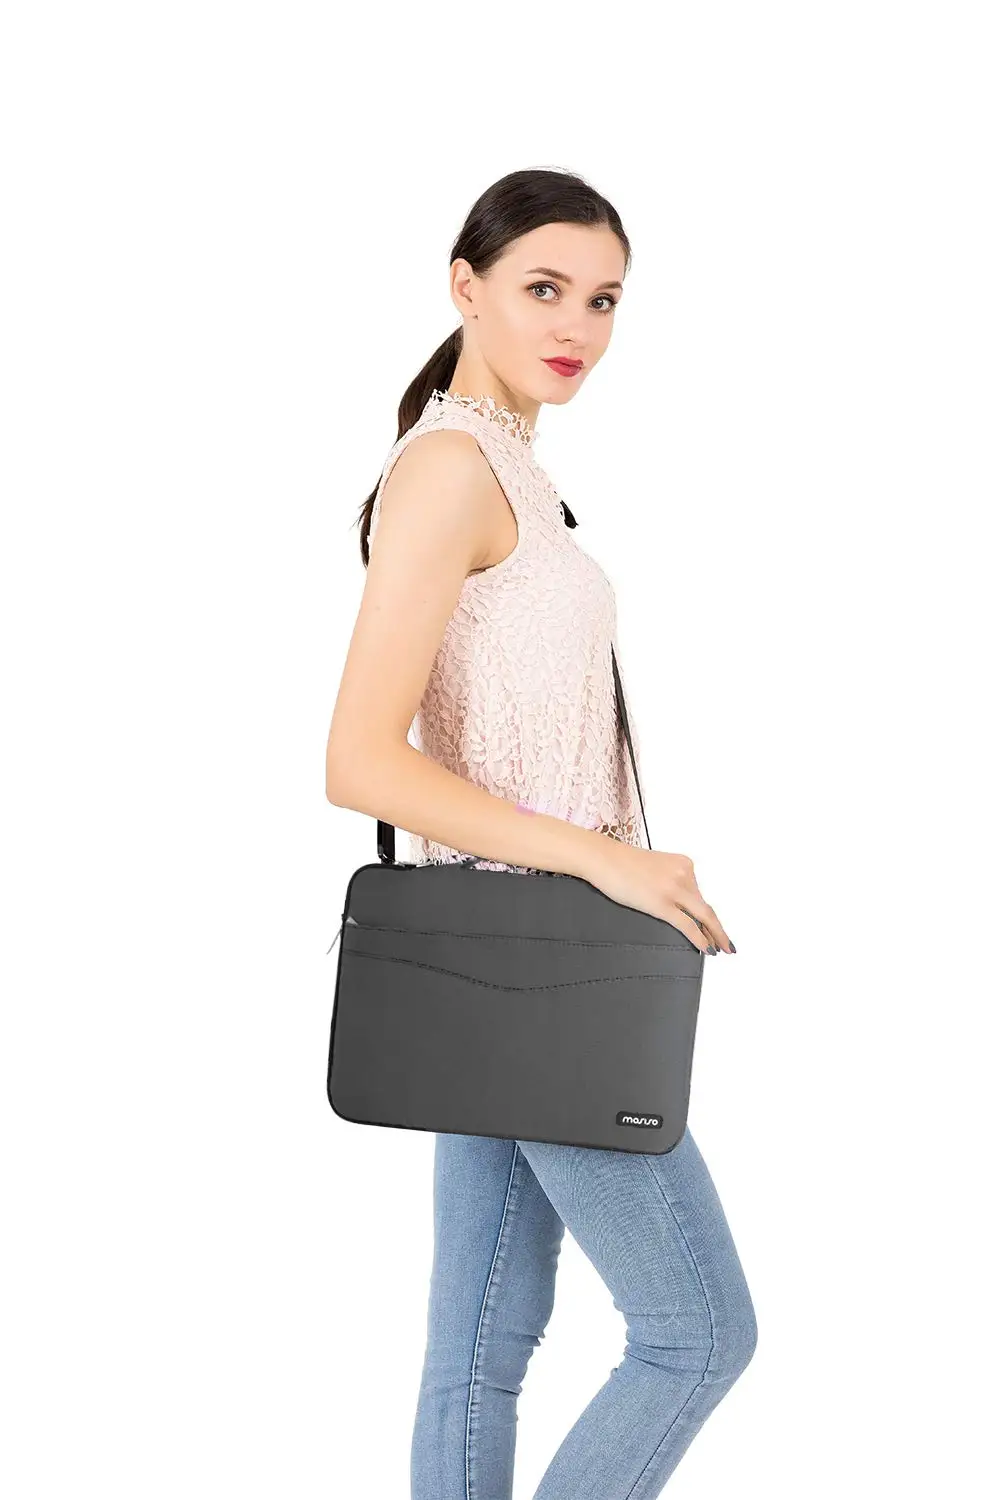 MOSISO мягкая Противоударная устойчивая сумка на плечо для ноутбука 13 13,3 дюймов для Macbook/Dell/acer/microsoft Surface портфель чехол для переноски